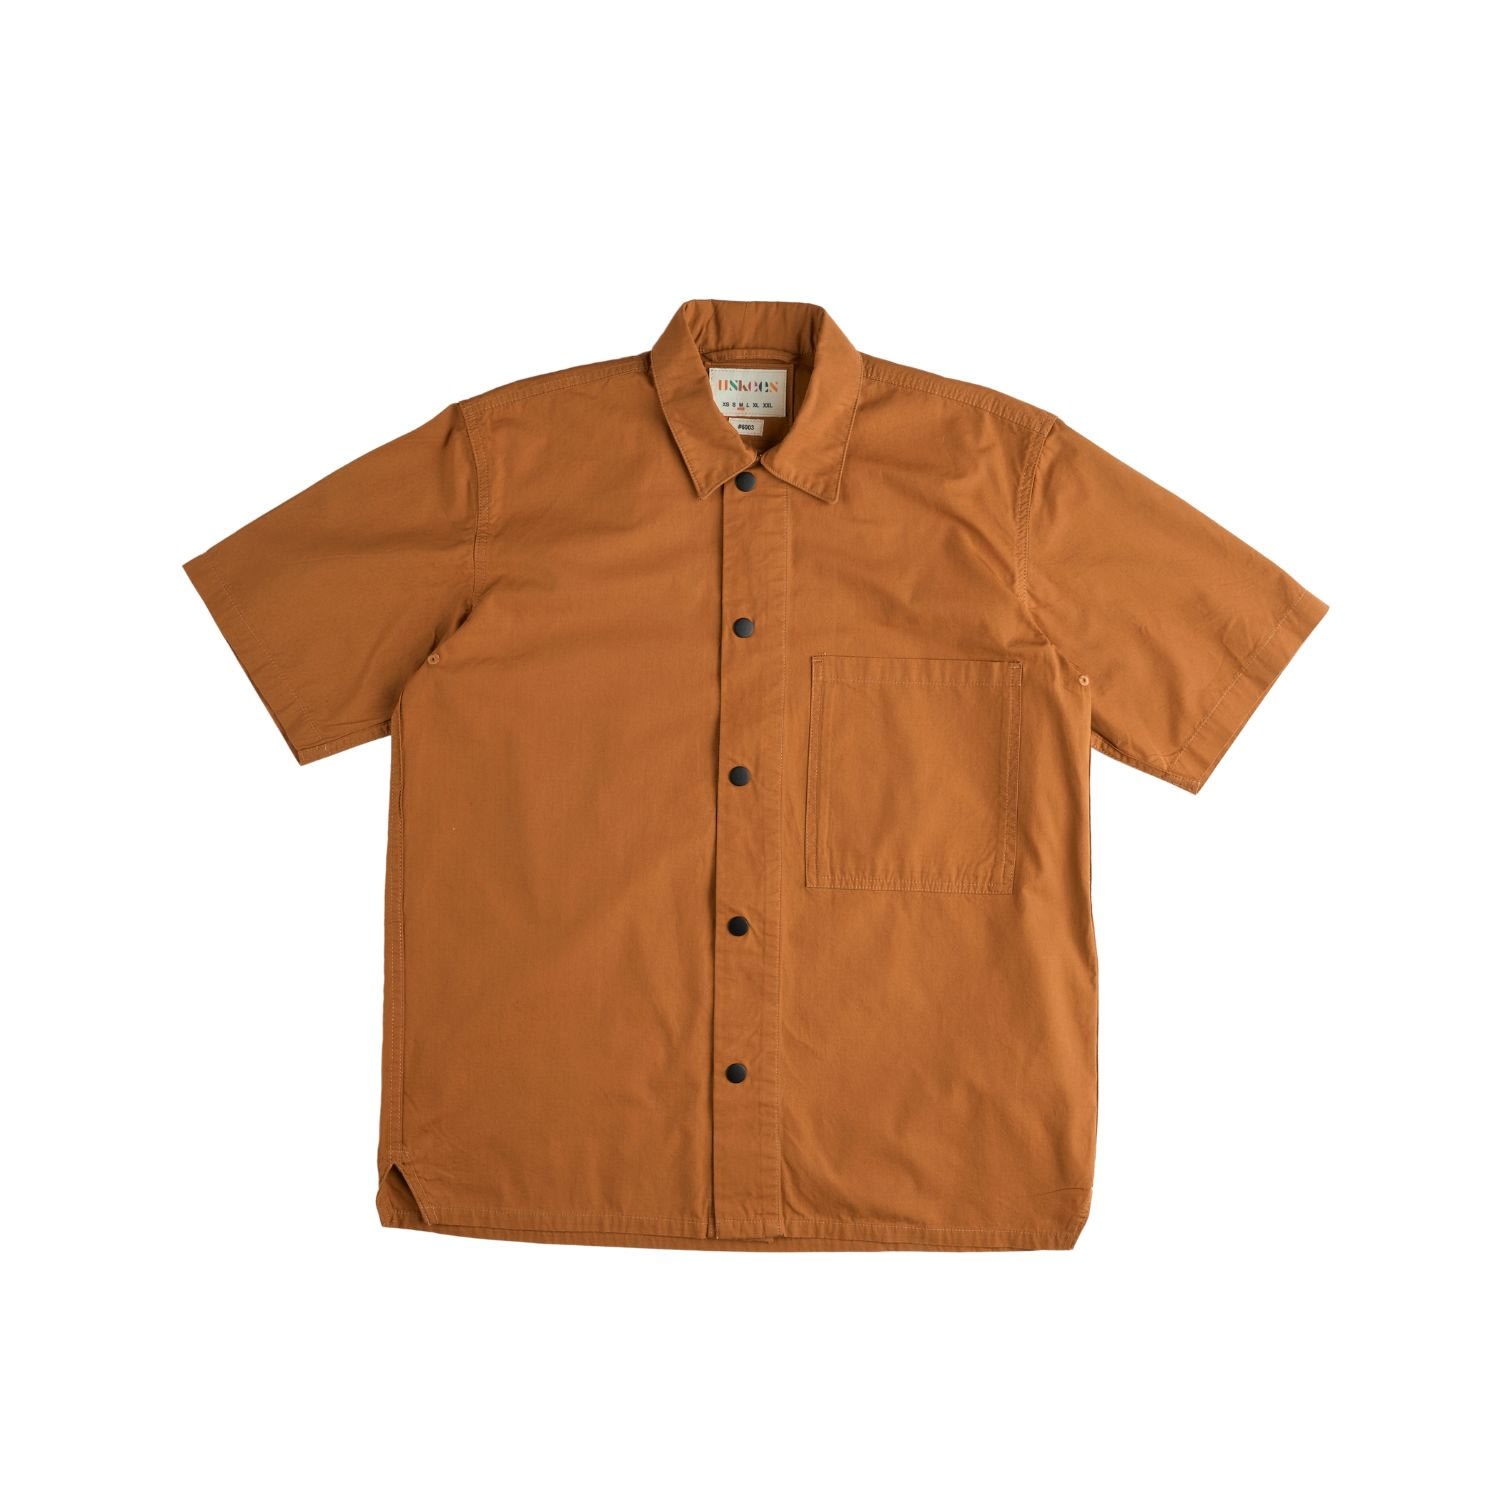 Men's 6003 Lightweight Short Sleeve Shirt - Light Brown Small Uskees